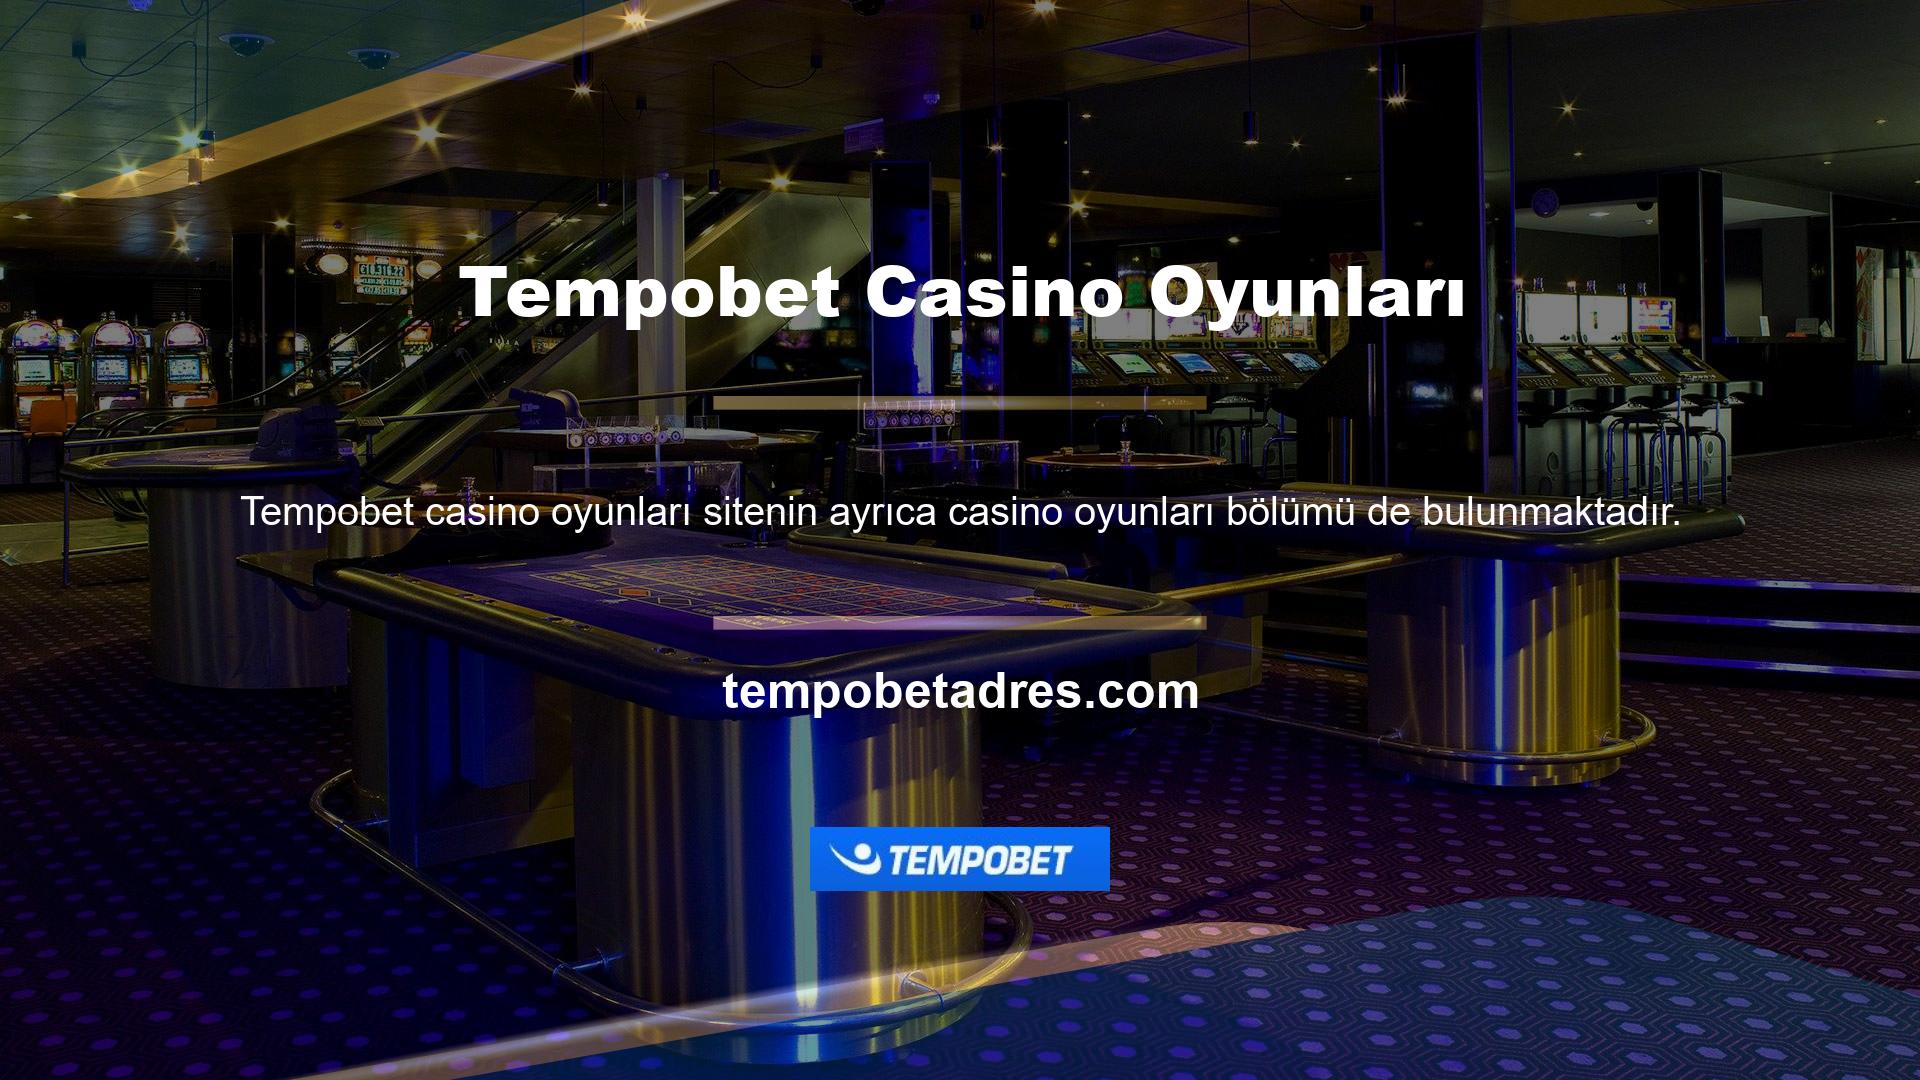 Tempobet Casino Oyunları her zaman rulet, bakara, blackjack ve poker gibi alternatif oyunlar sunmaktadır